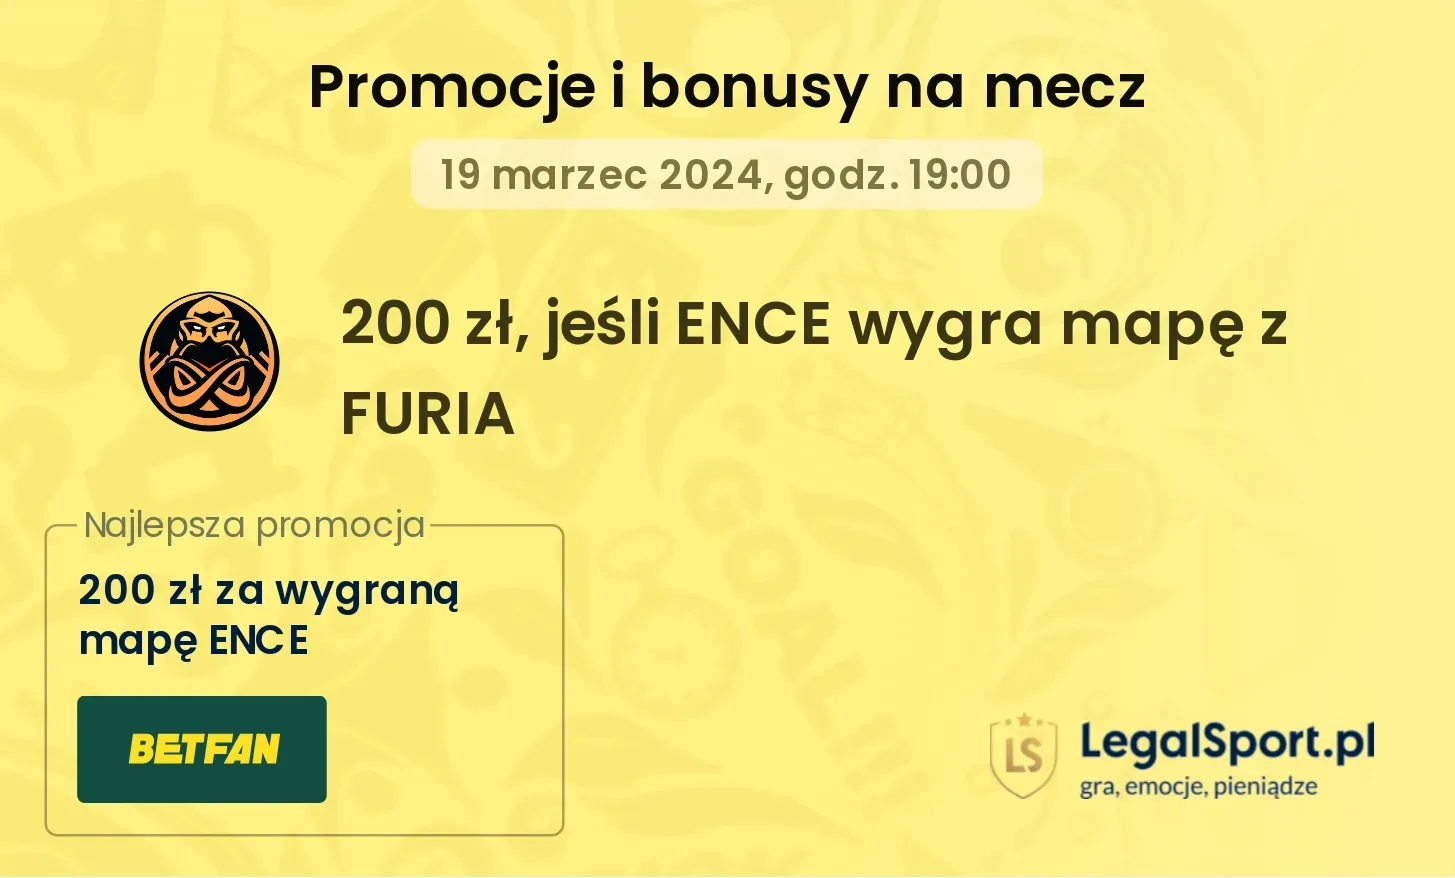 200 zł, jeśli ENCE wygra mapę z FURIA promocje bonusy na mecz